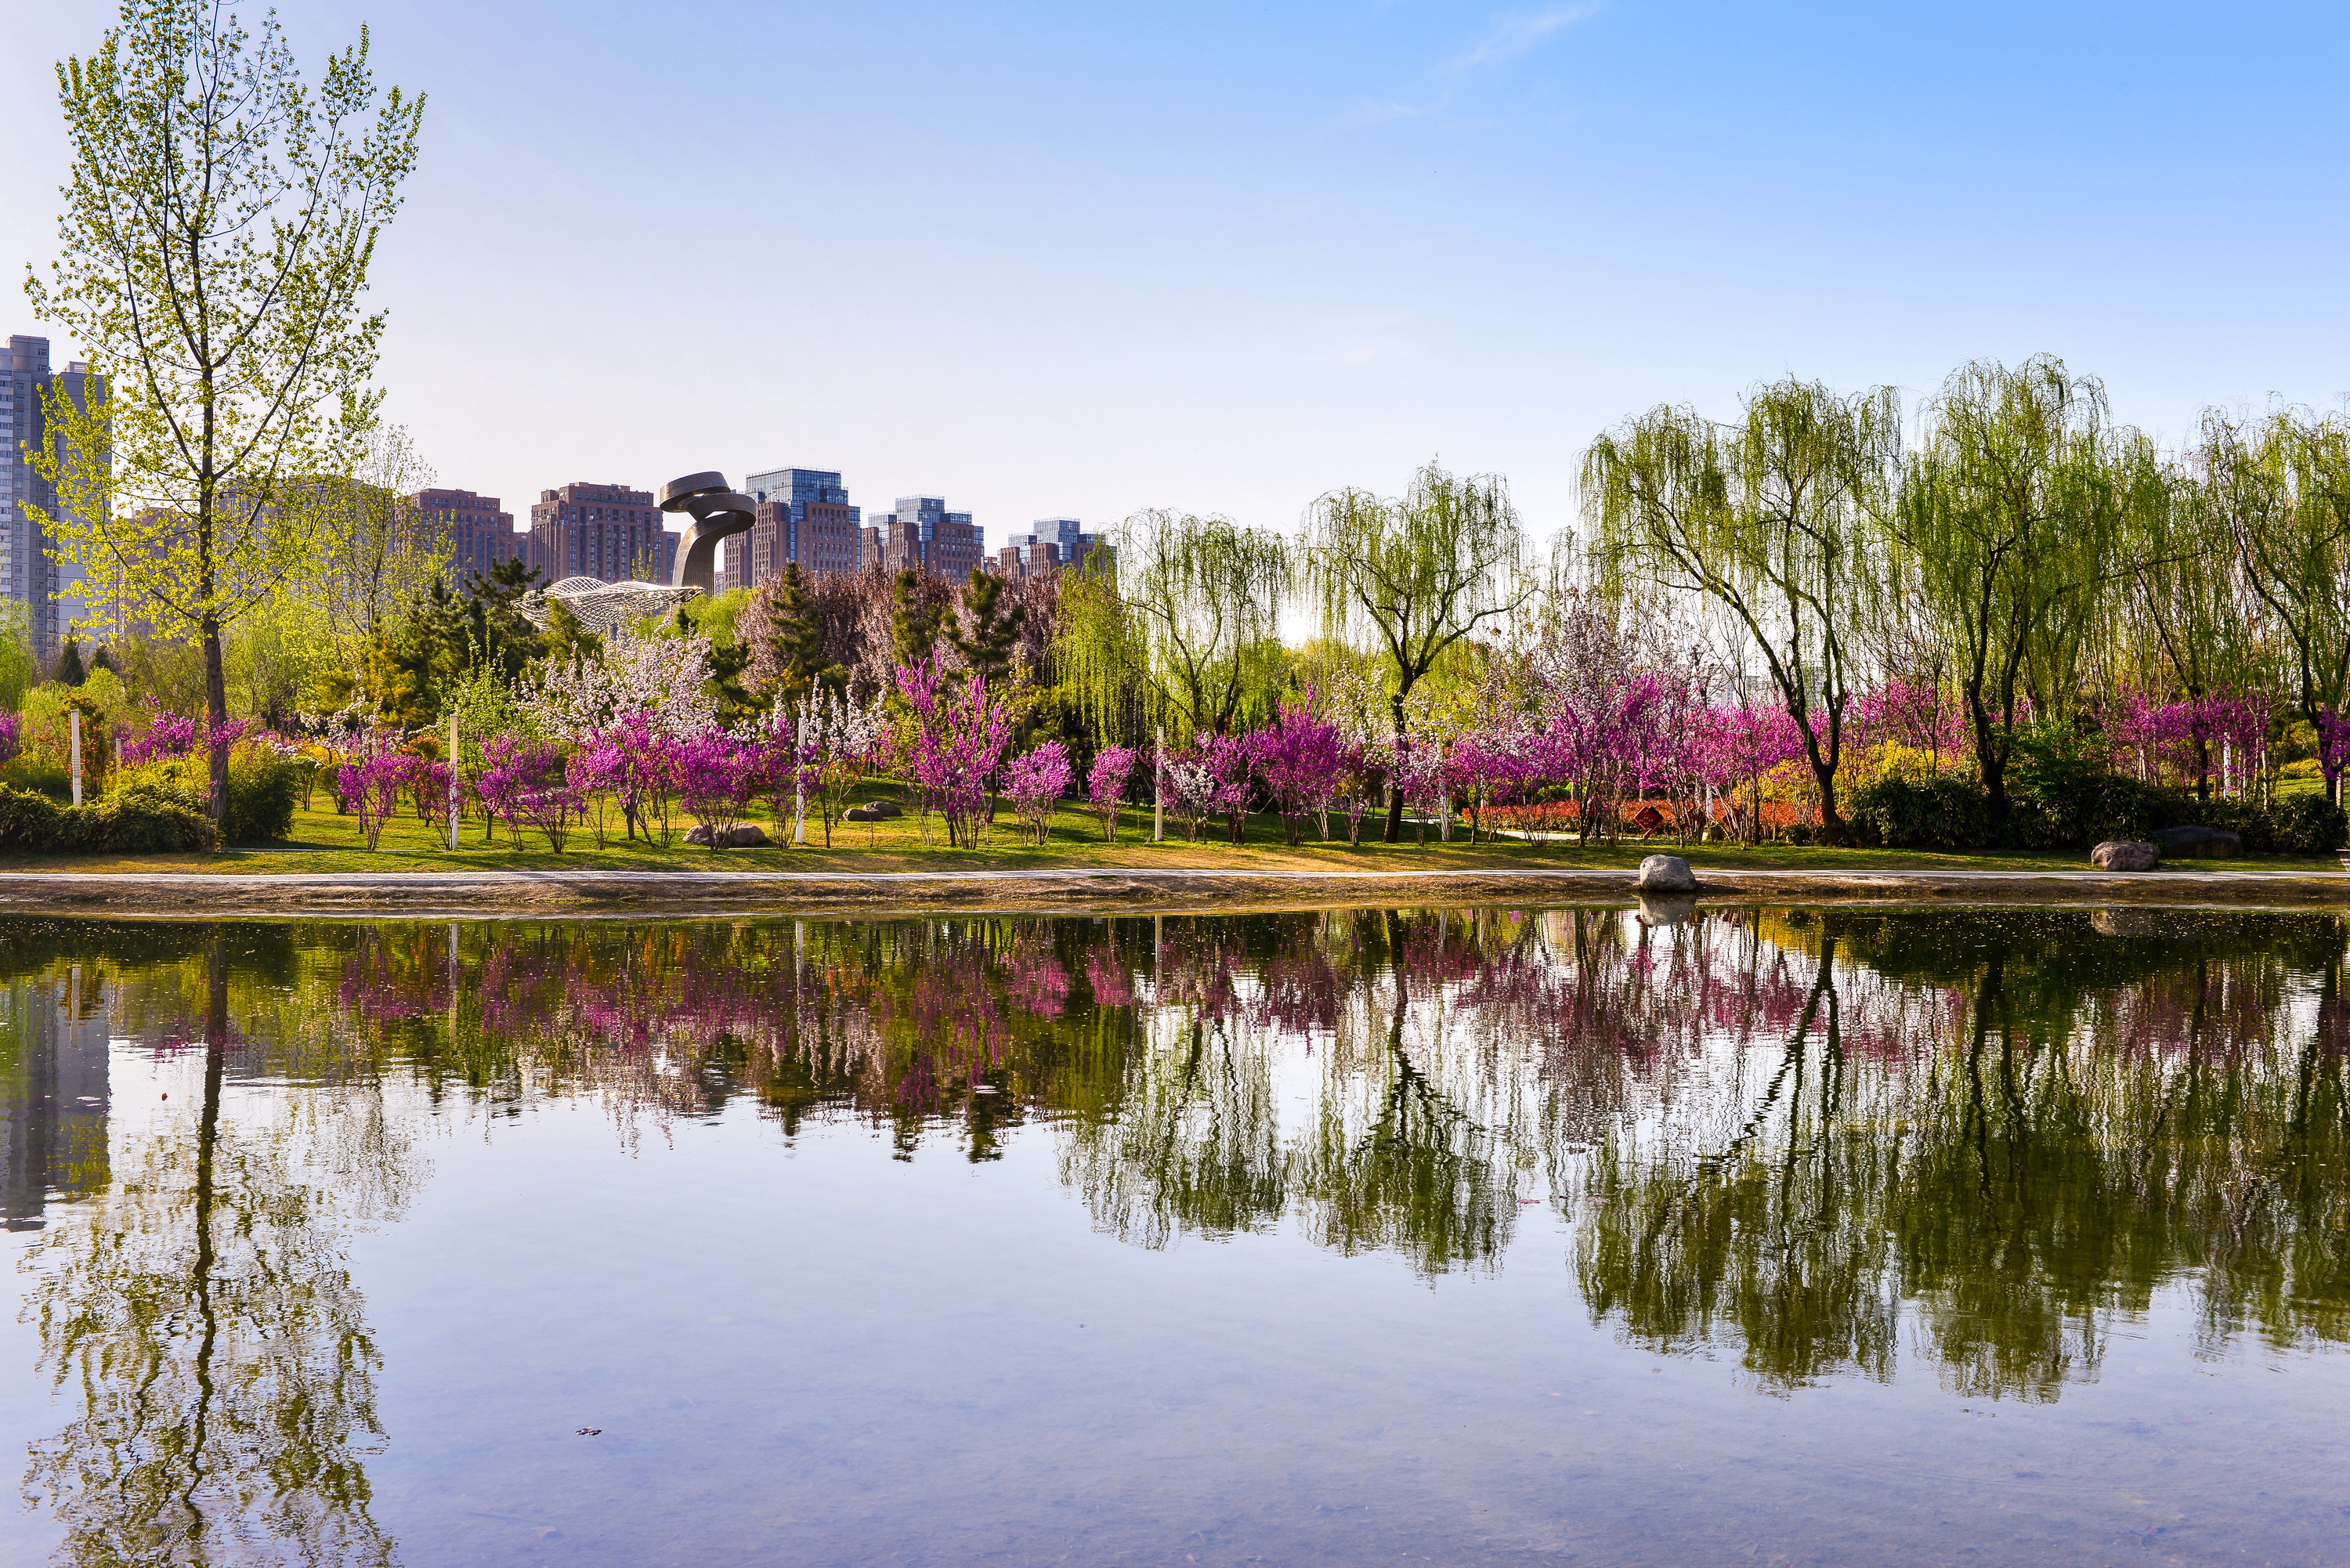 郑州之林手机拍的都这么美,还跑什么武大看樱花